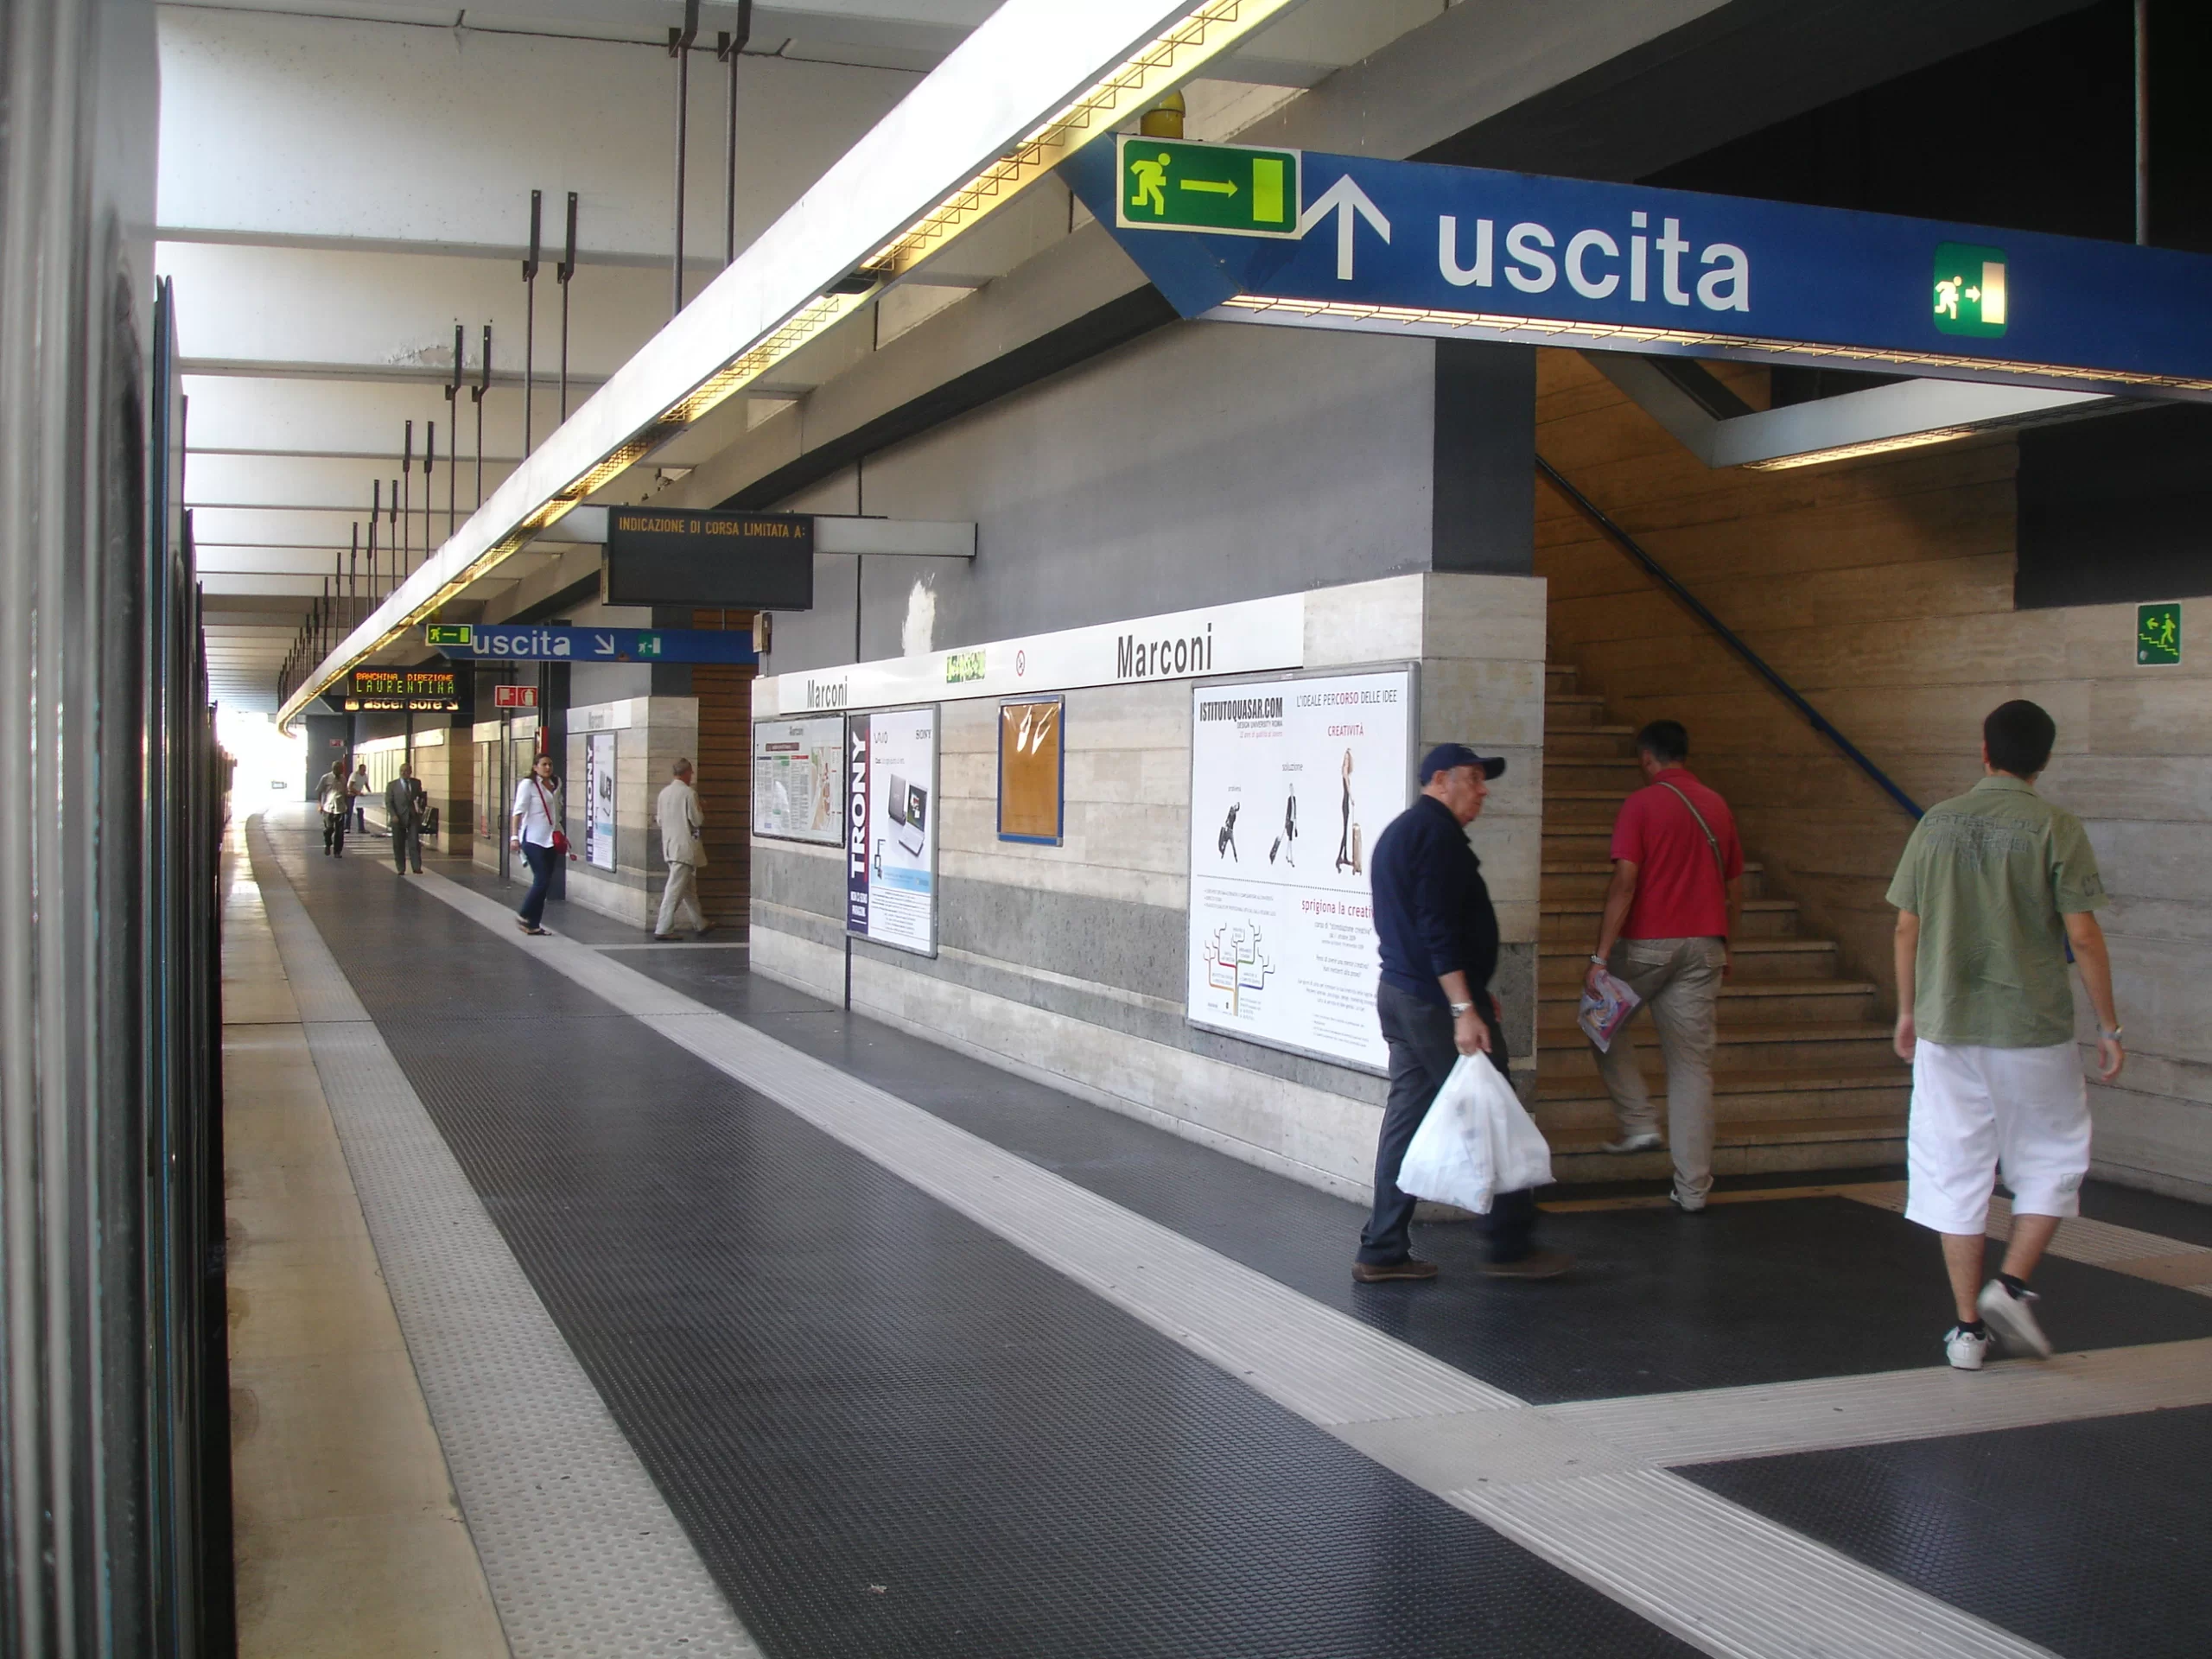 Выход из метро в Риме